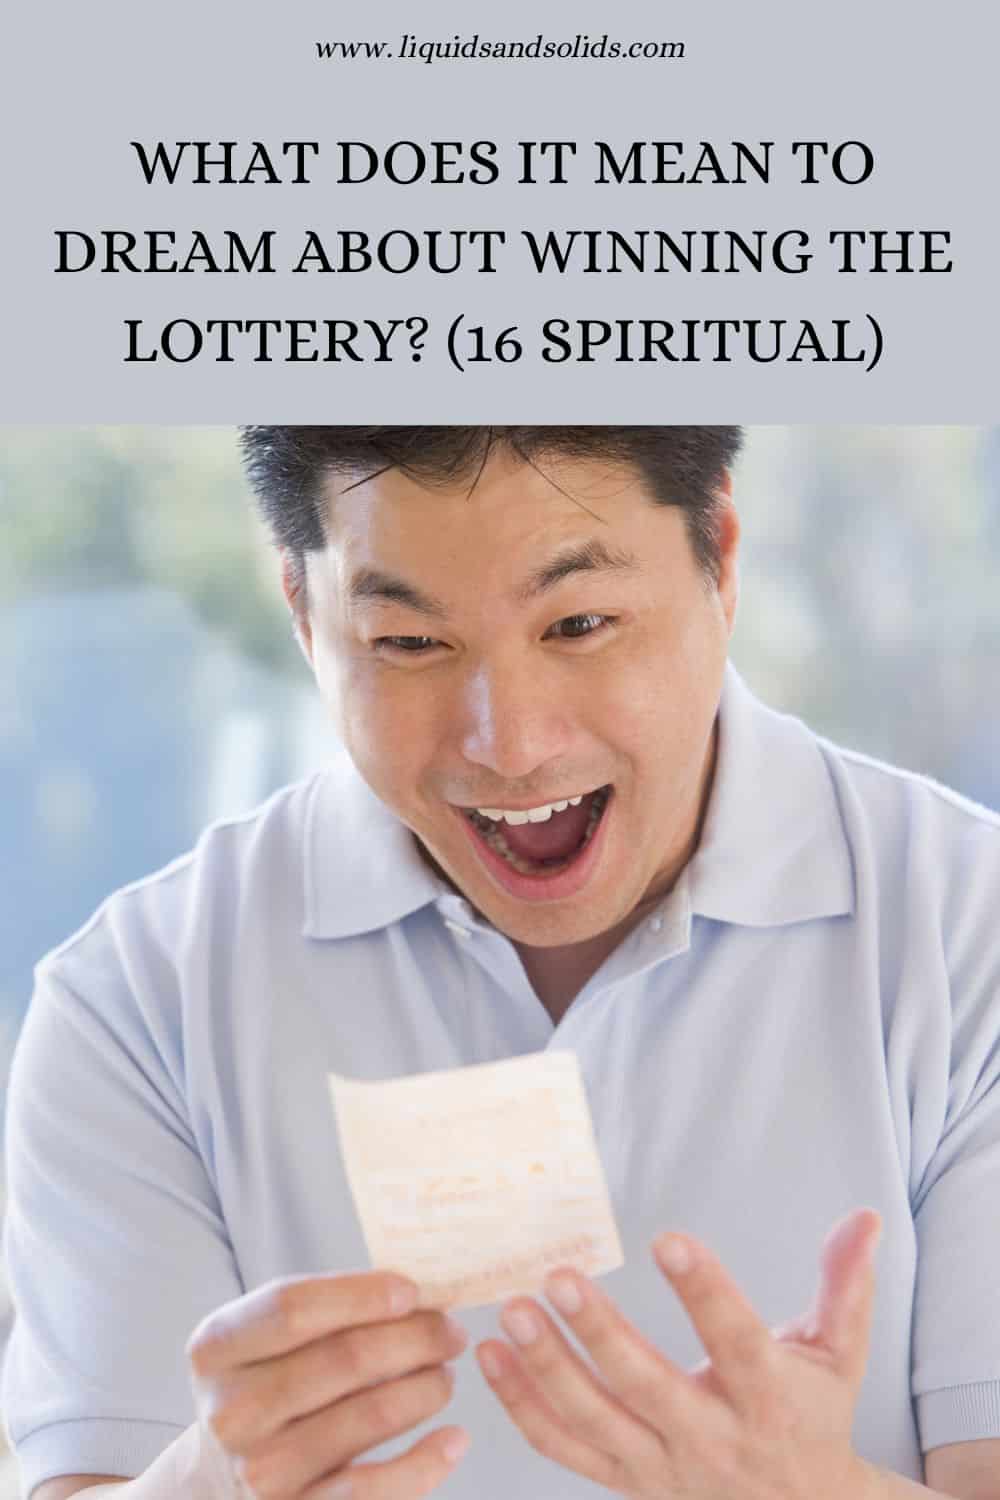  Drøm om at vinde i lotteriet? (16 spirituelle betydninger)